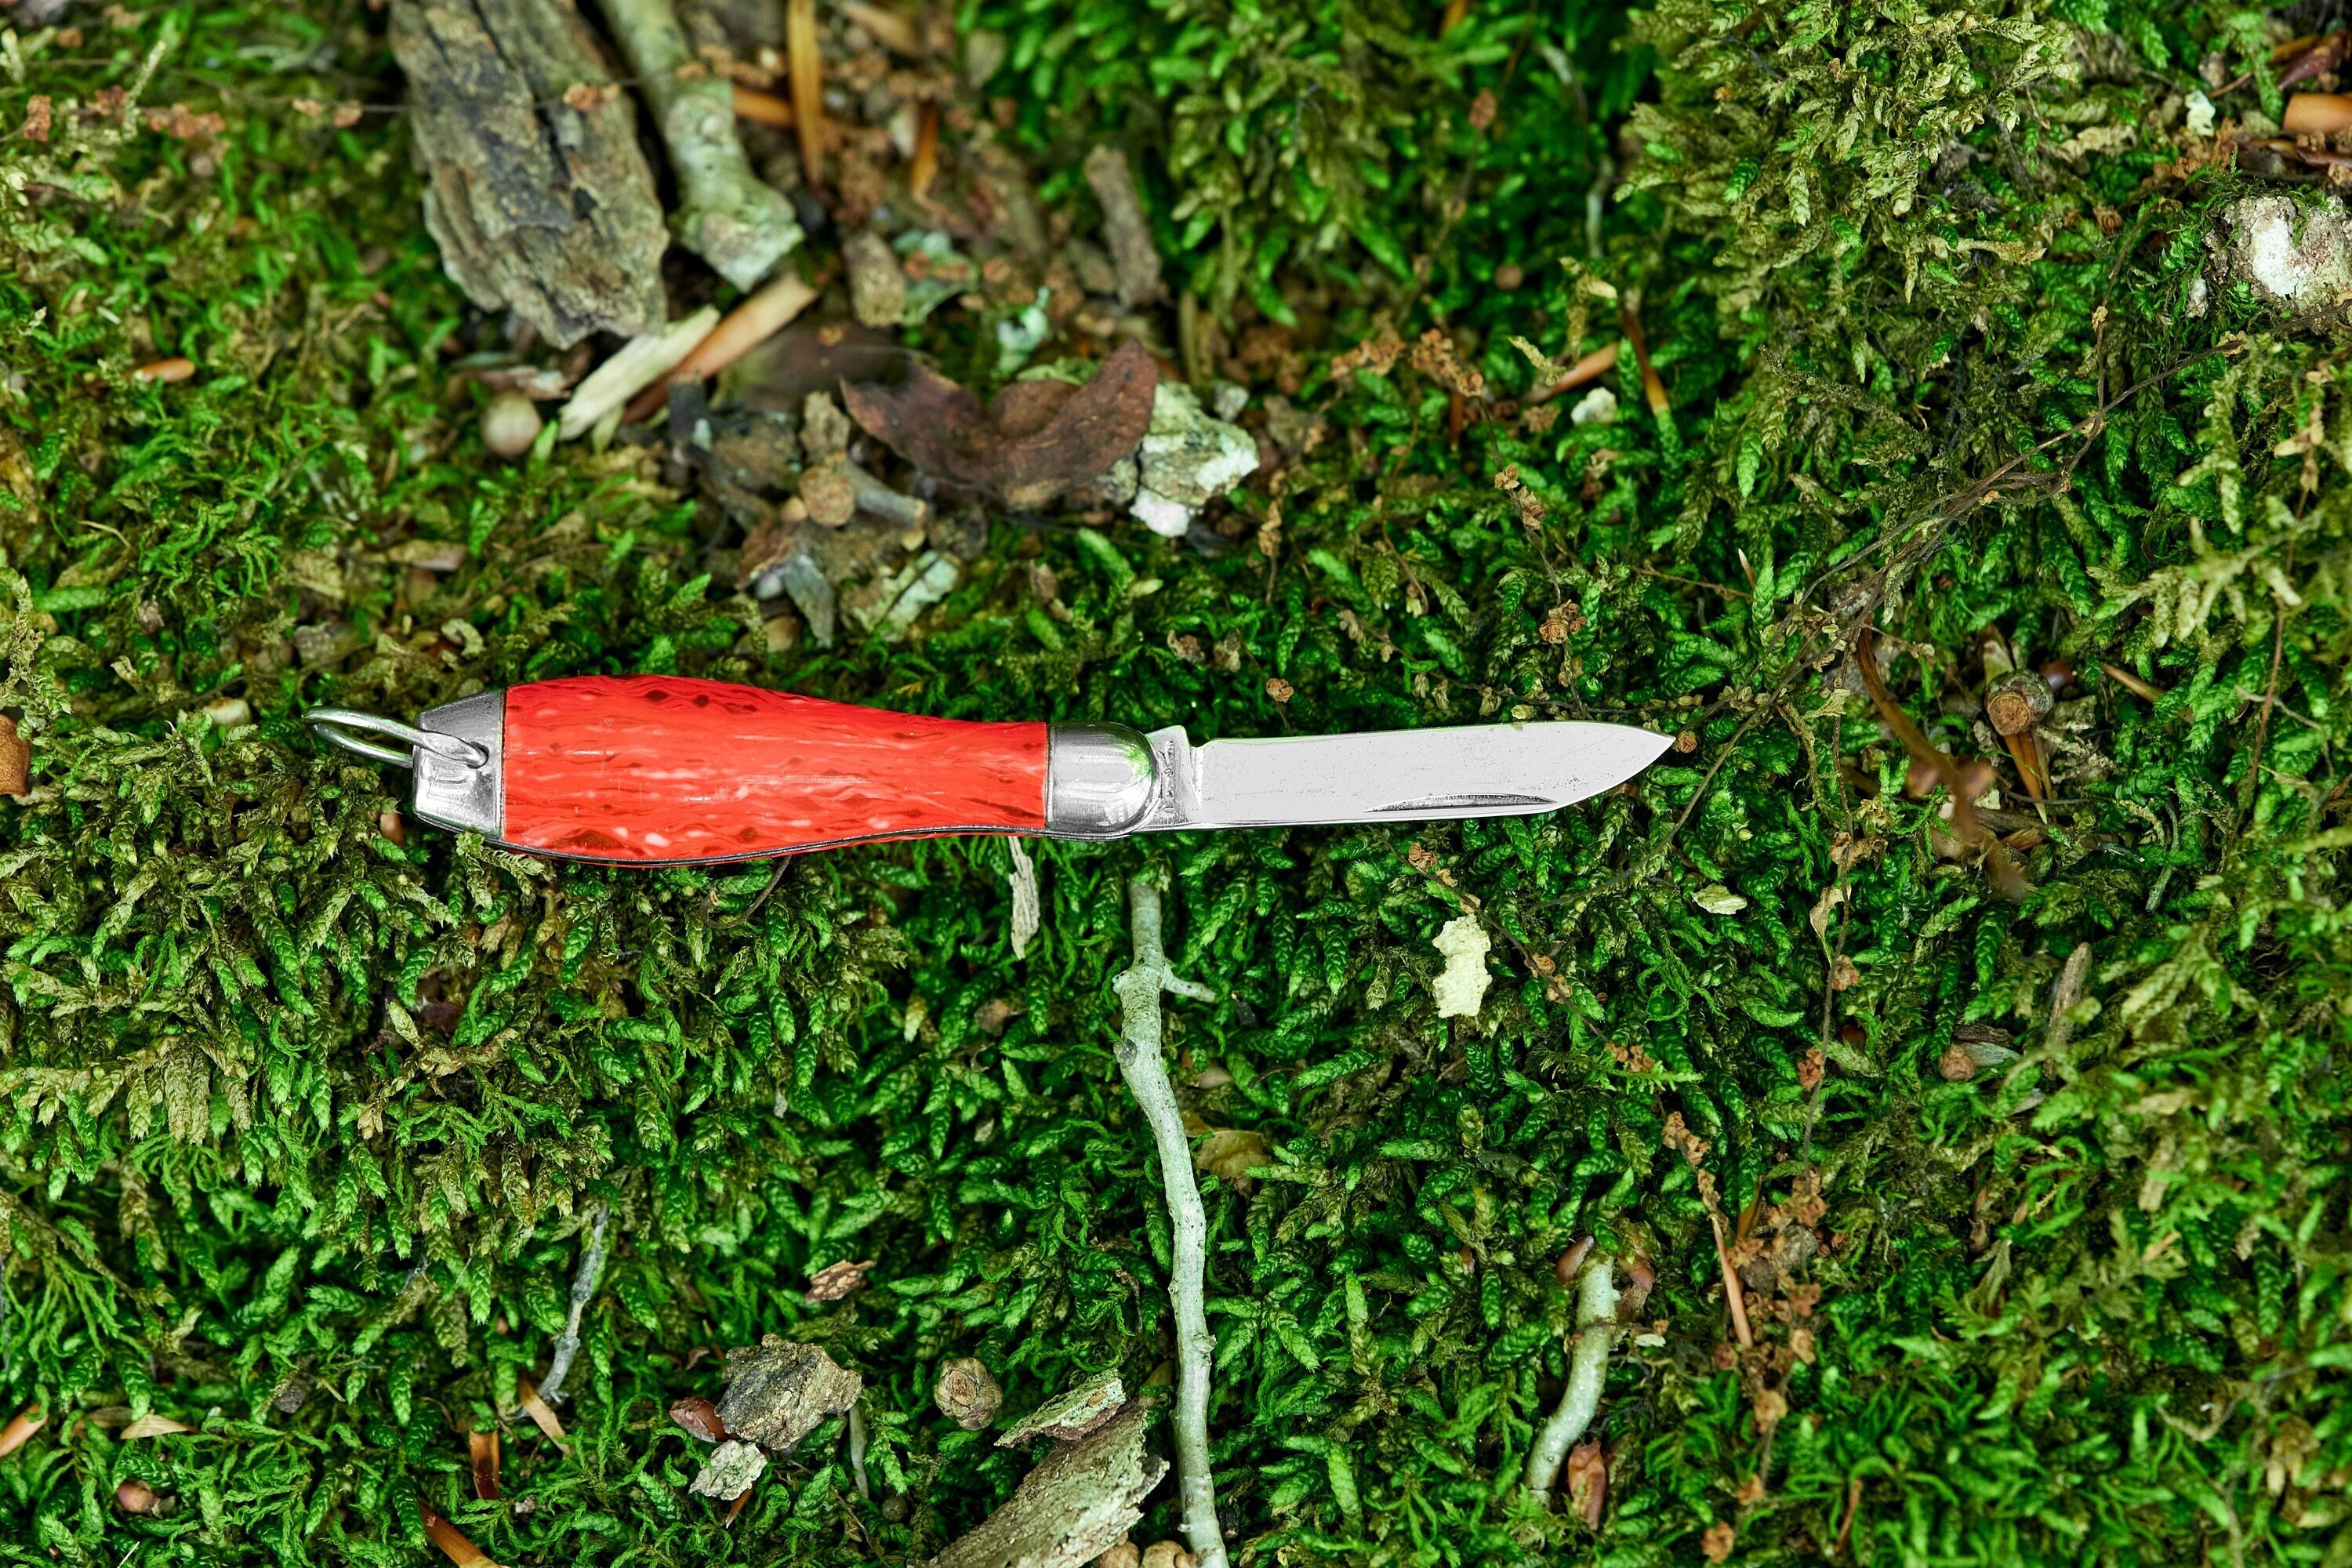 Hammer Brand USA Knife 2 Blade Pocket Knife Vintage Folding Knife